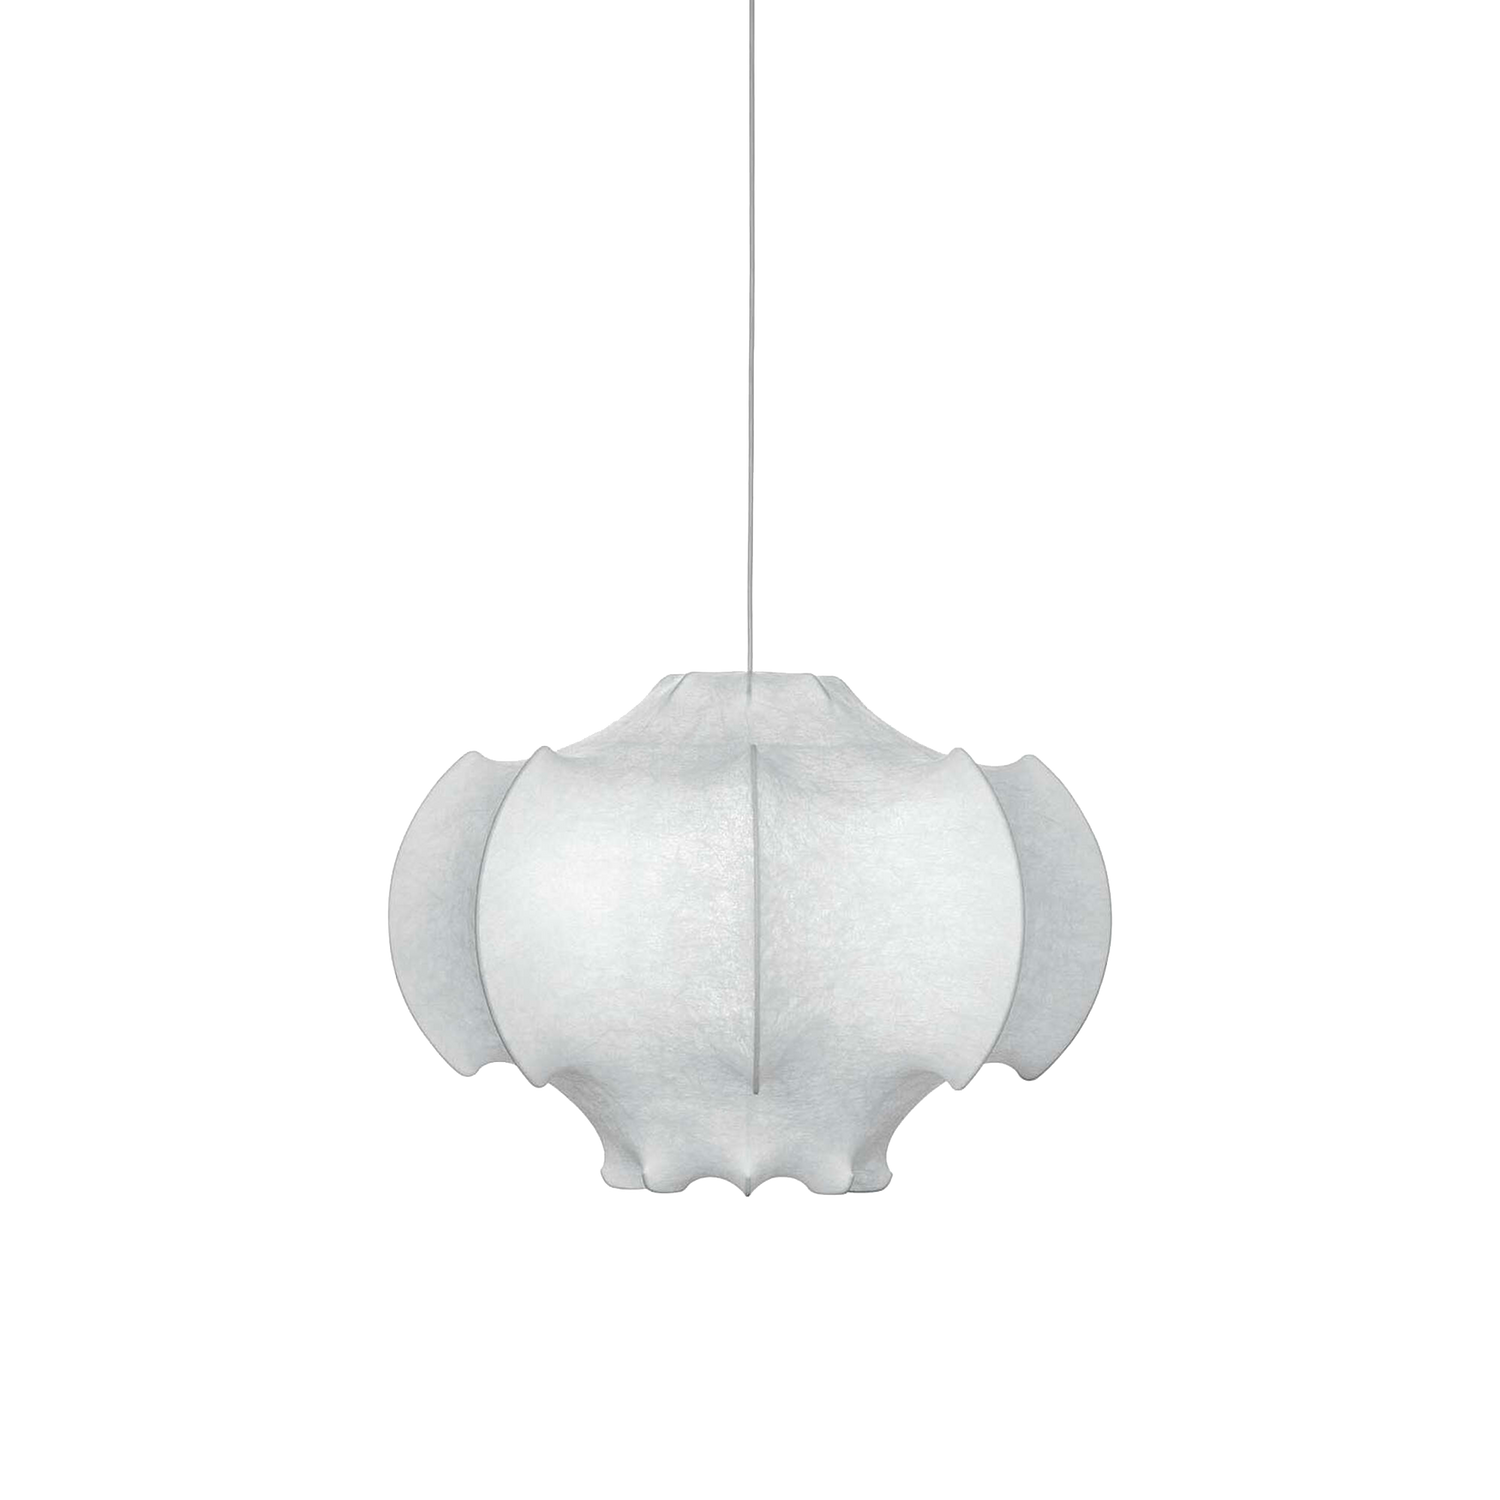 Taklampen Viscontea fra Flos ble designet av Achille og Pier Giacomo Castiglioni i 1960 og er en av deres mest ikoniske lamper. Med sin kokonglignende form er lampen spennende og skulpturell i uttrykket og vil garantere deg et nydelig blikkfang, som avgir et mykt og behagelig lys i rommet. 